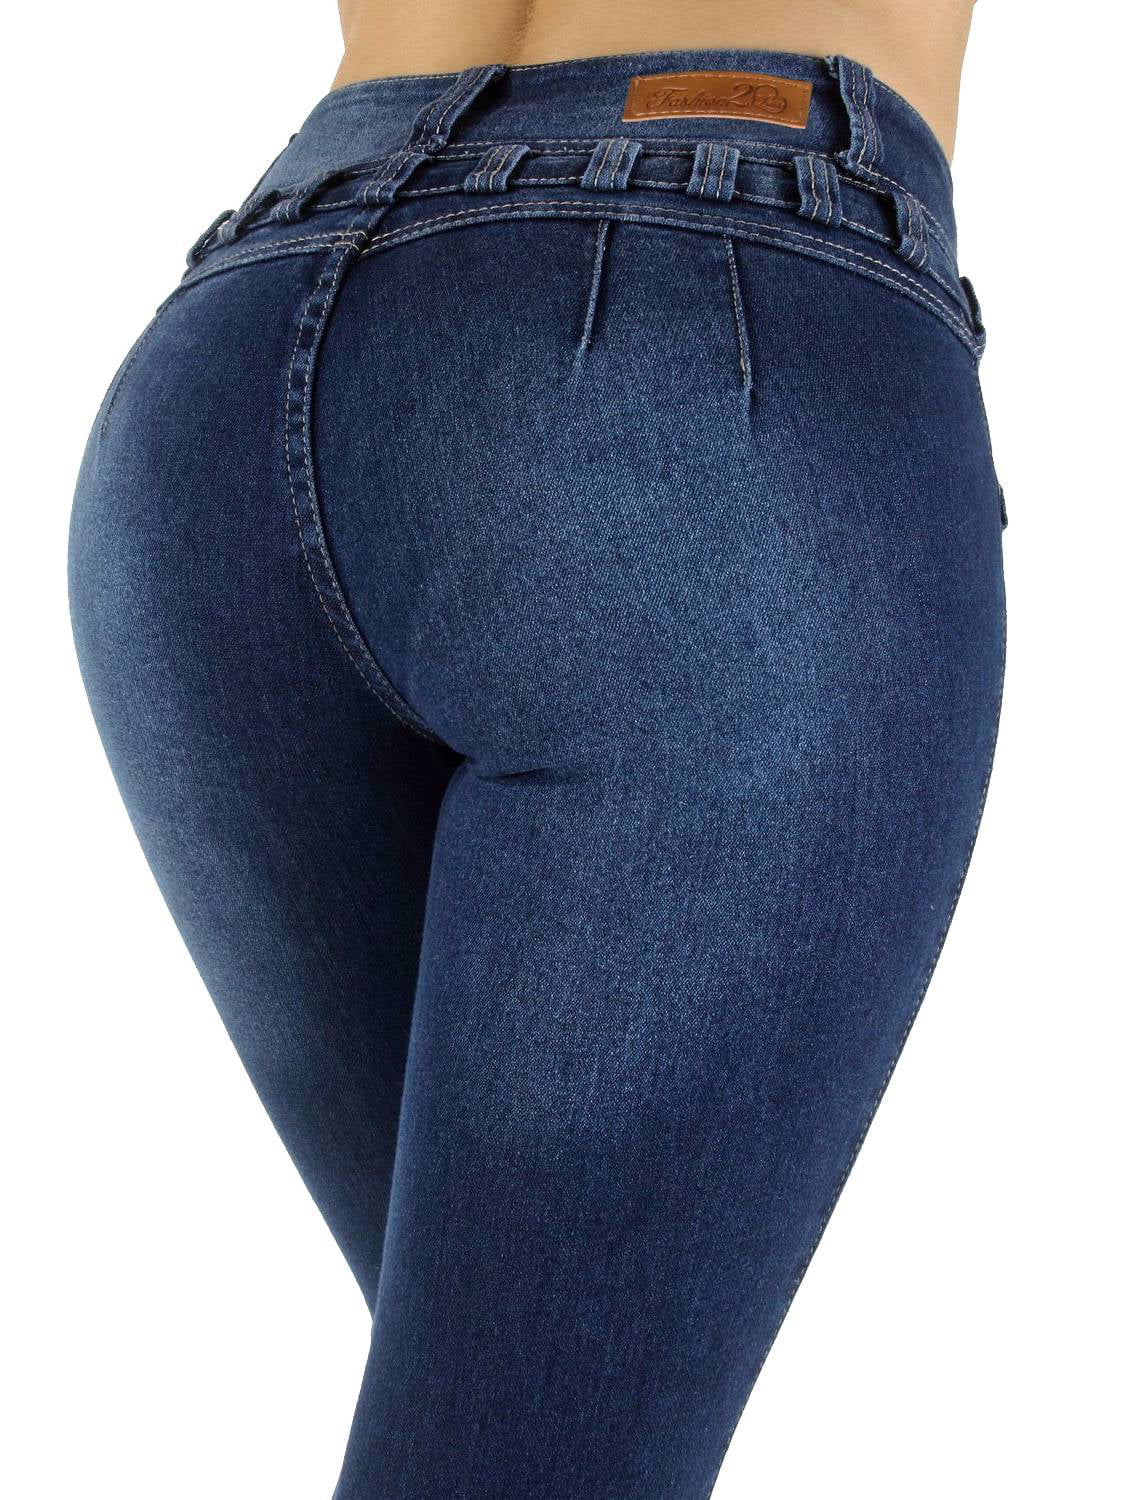 best butt enhancing jeans